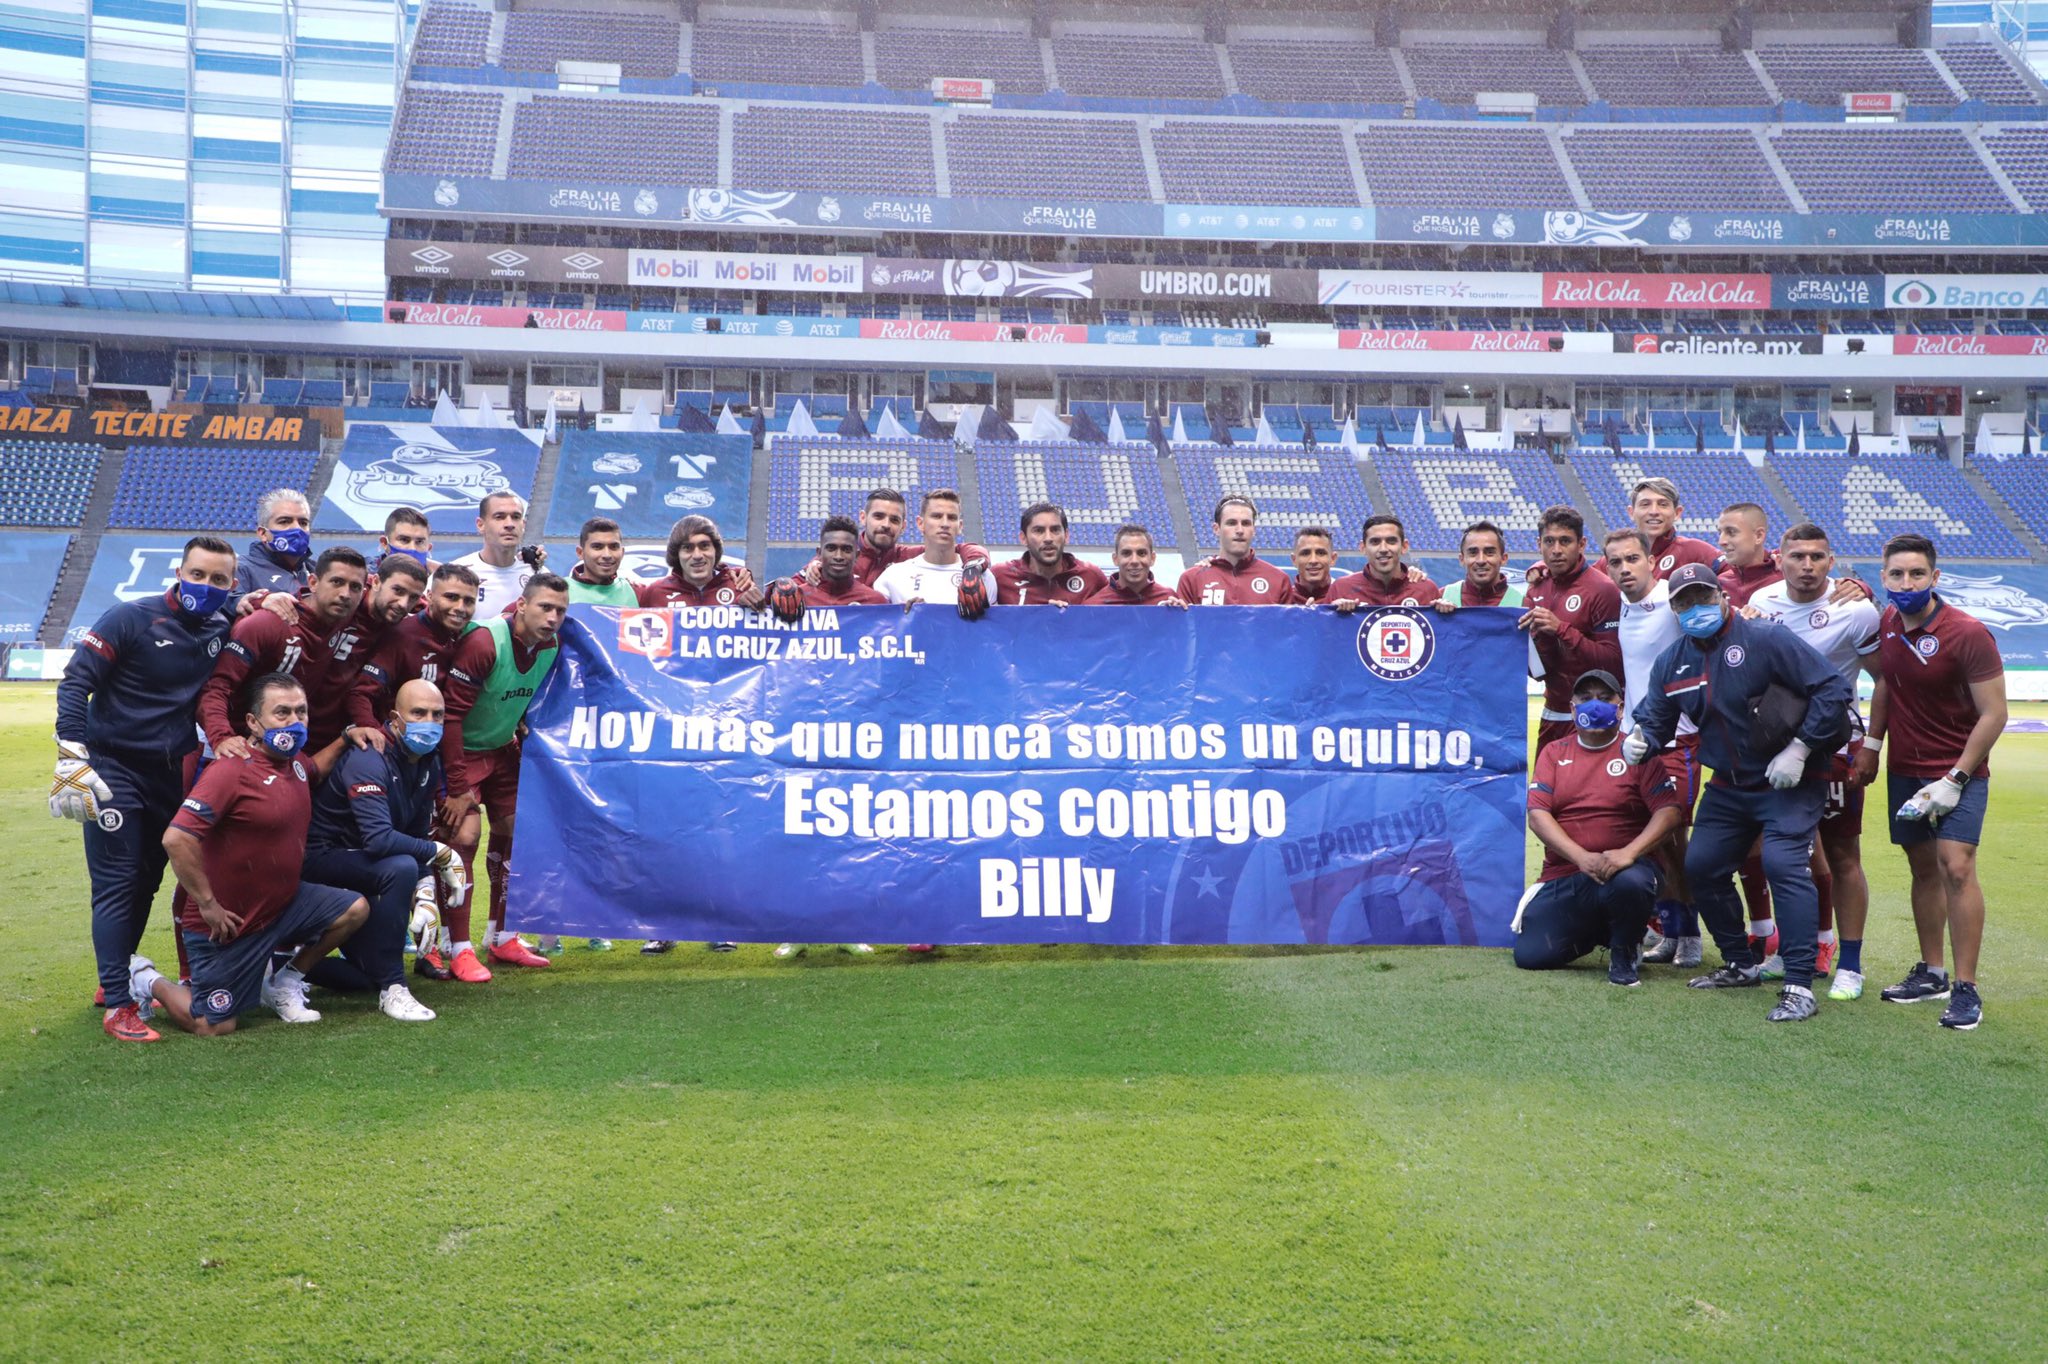 En el partido contra el Puebla, jugadores salieron con una pancarta en apoyo a Billy Álvarez (Foto: Twitter/ @CruzAzulCD)